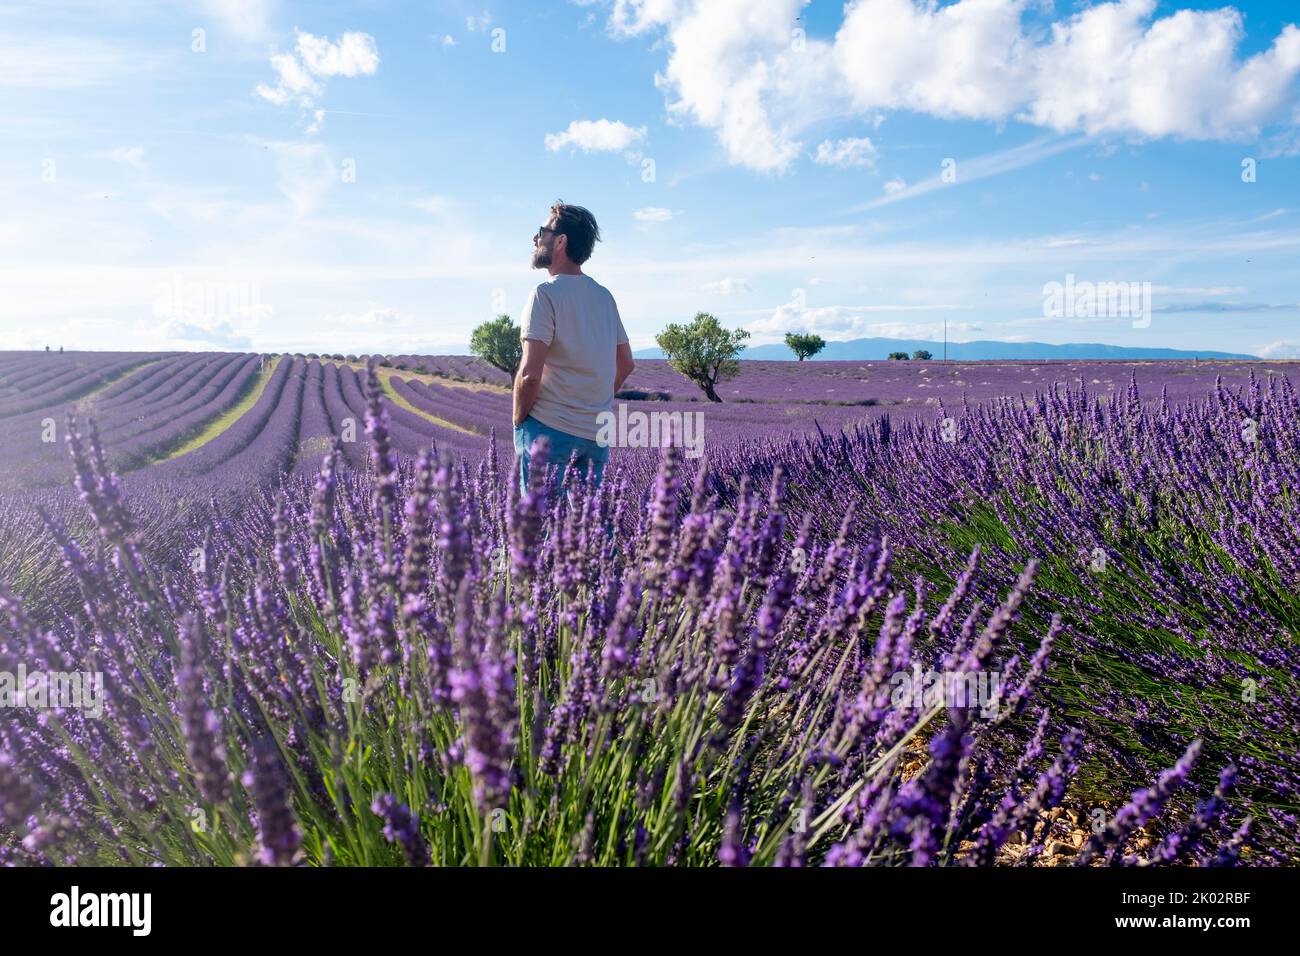 Mann Tourist steht in der Mitte des Lavendelfeldes in europa Sommerurlaub Urlaub Freizeitaktivitäten. Menschen, die den Frühling und die Natur genießen. Blauer Himmel und Blumen im Hintergrund Porträt Stockfoto